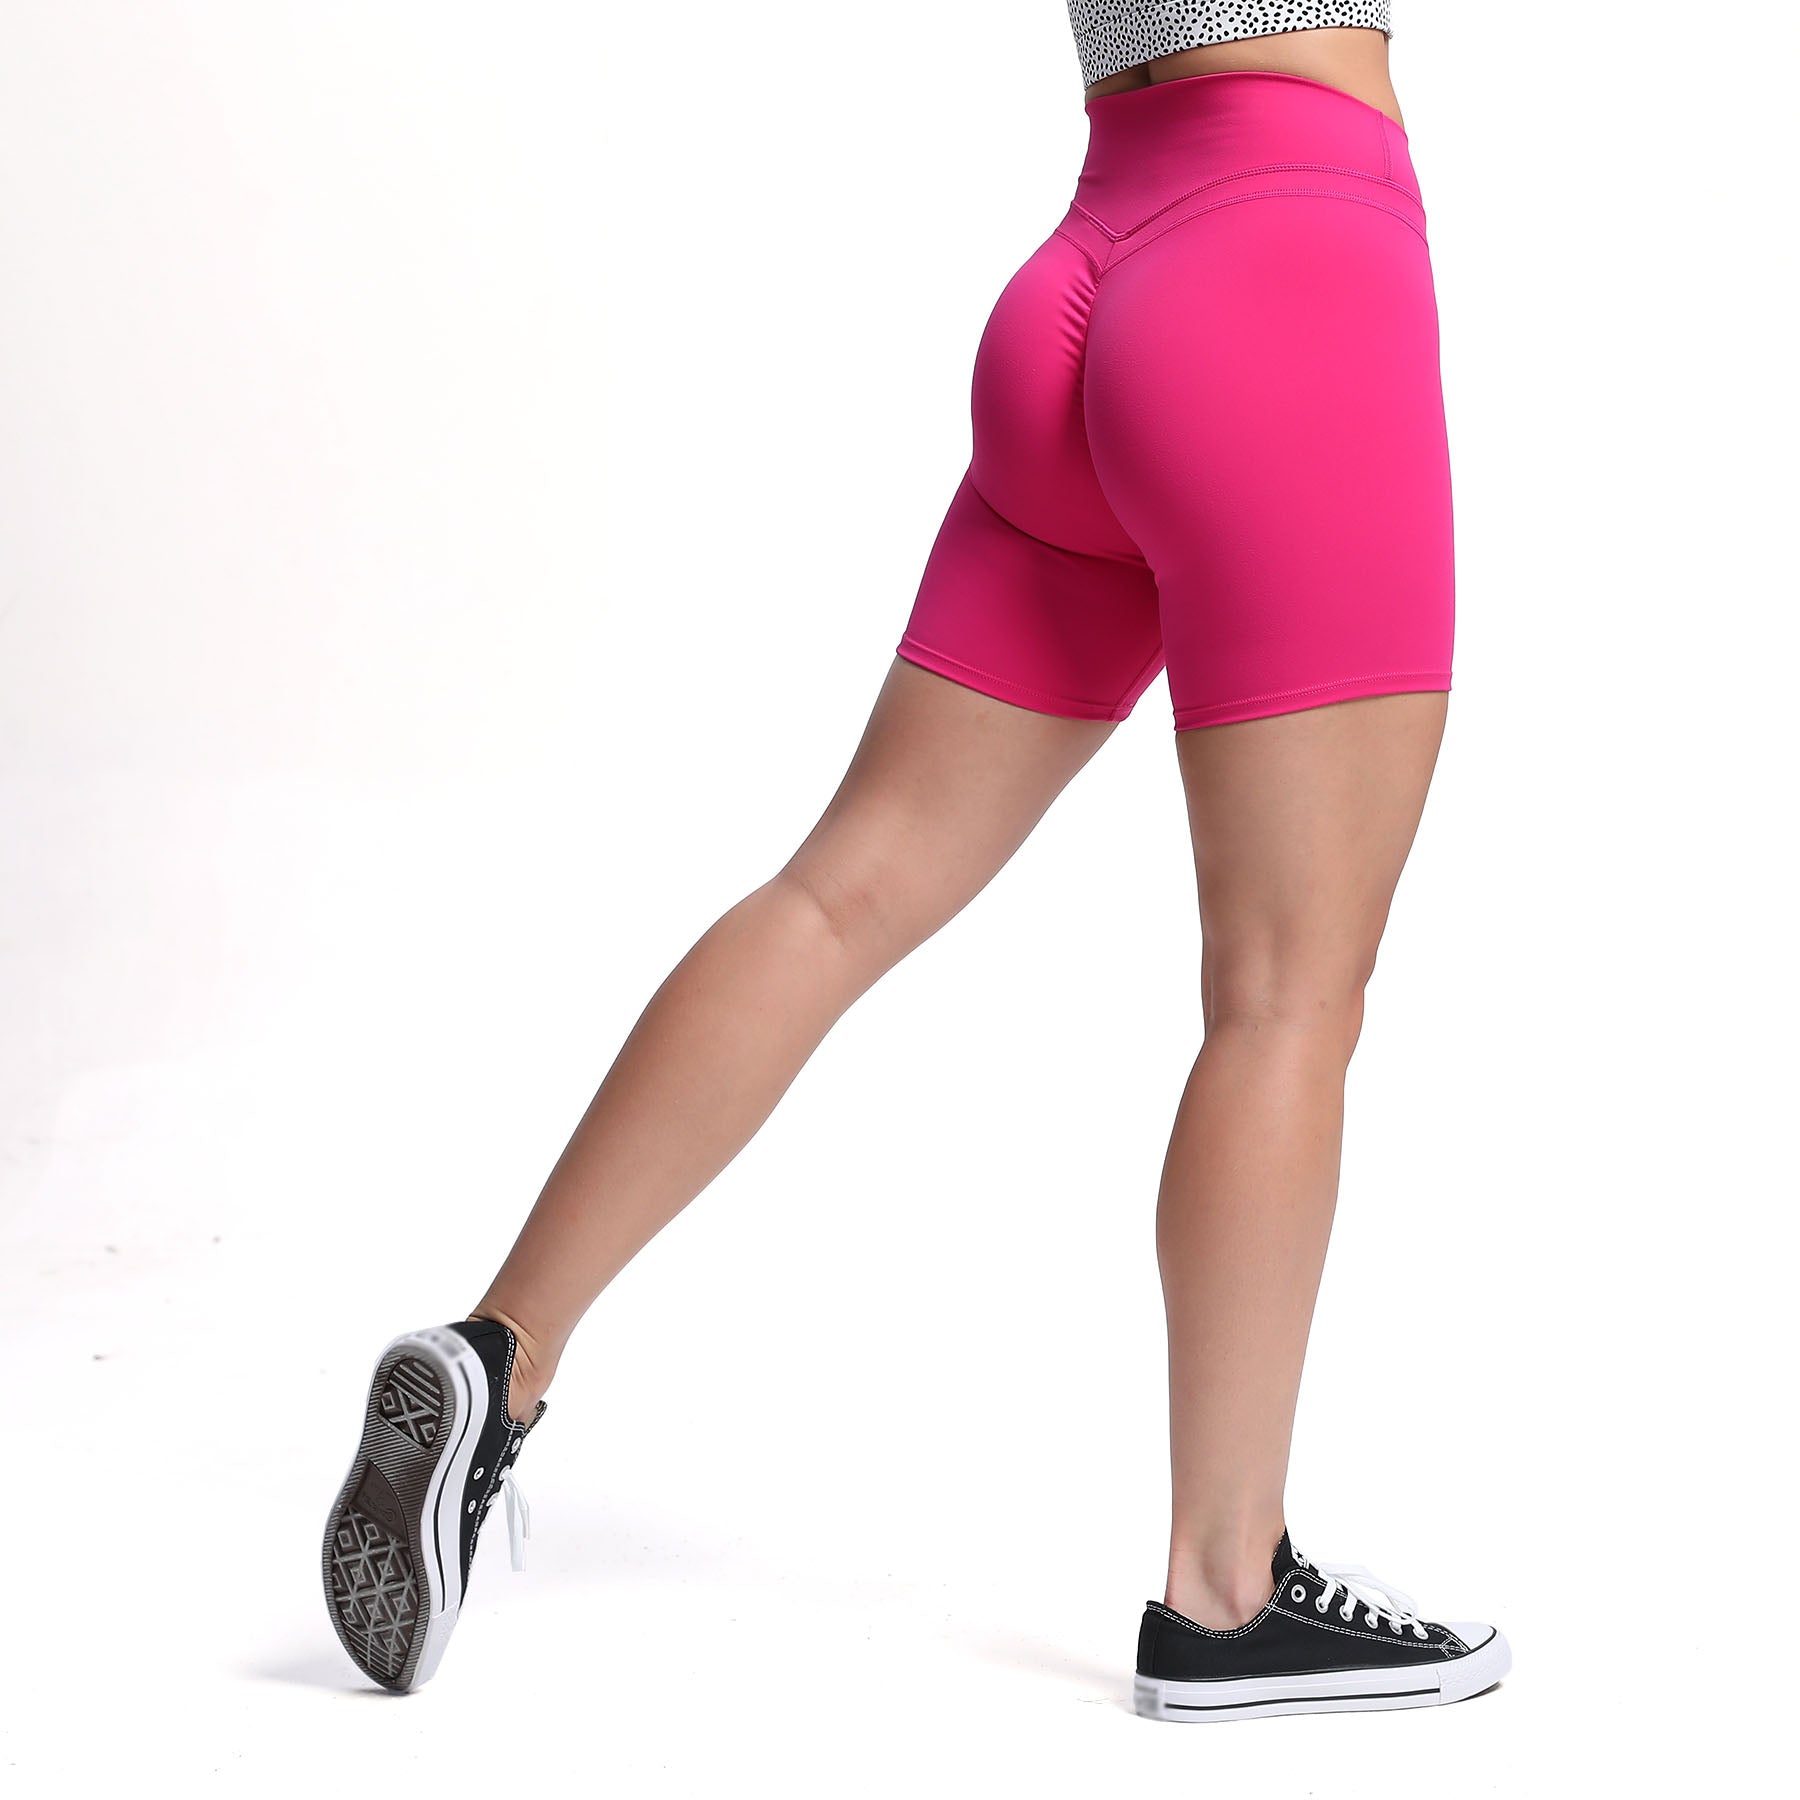 Aoxjox Elysian Scrunch Shorts